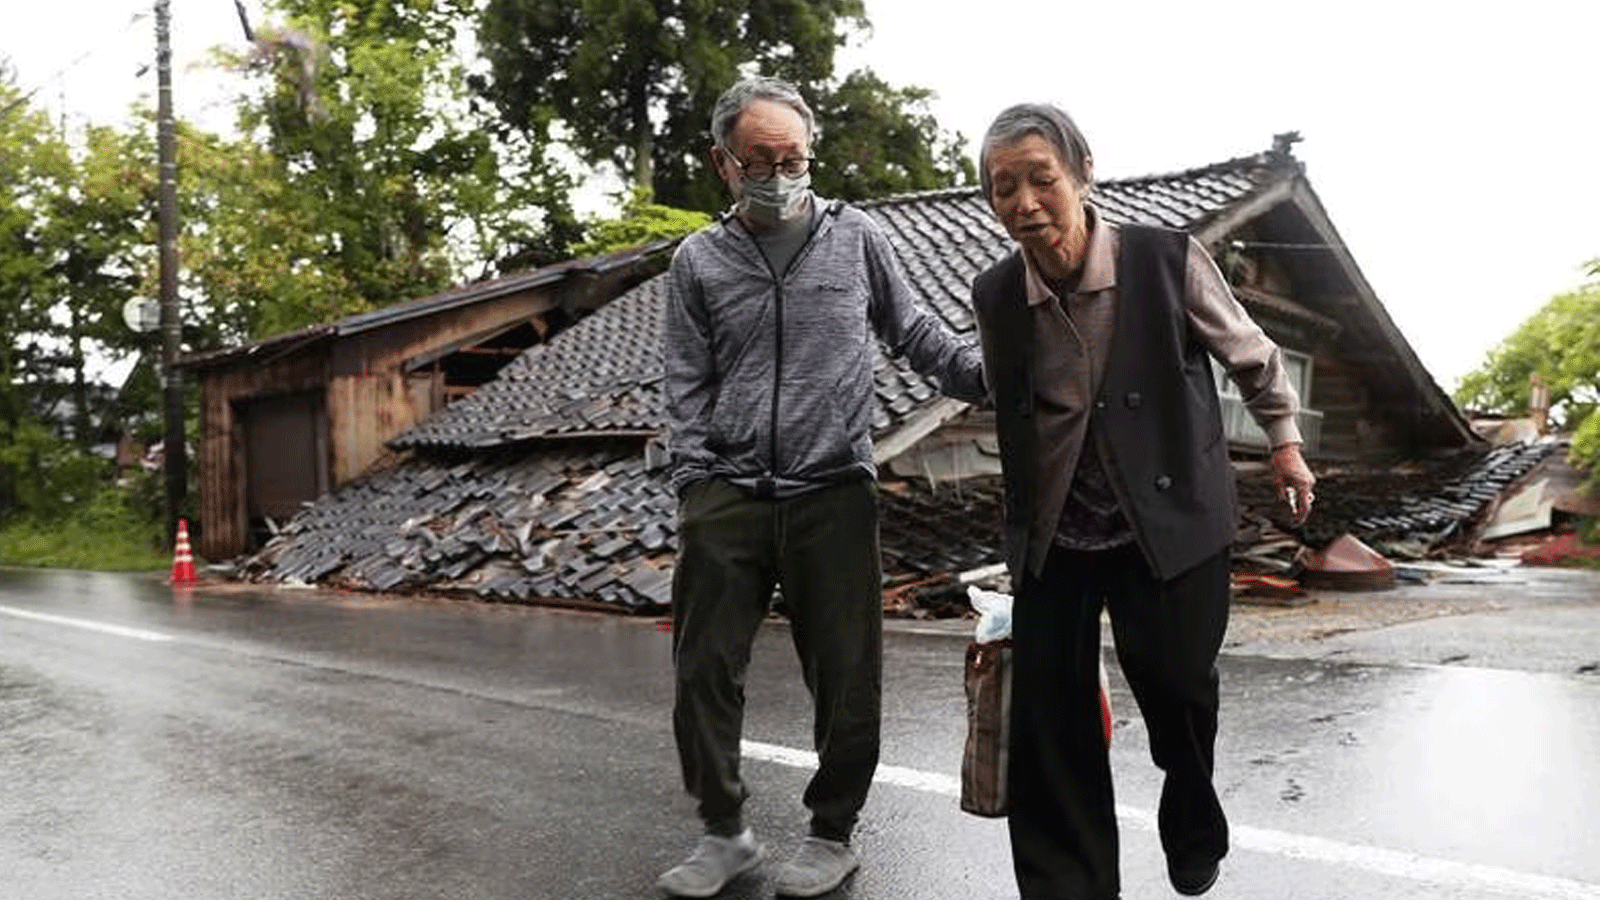 سكان في مدينة سوزو يمرون بجانب منزل انهار عندما ضرب زلزال بقوة 6. 5 درجات محافظة إيشيكاوا اليابانية